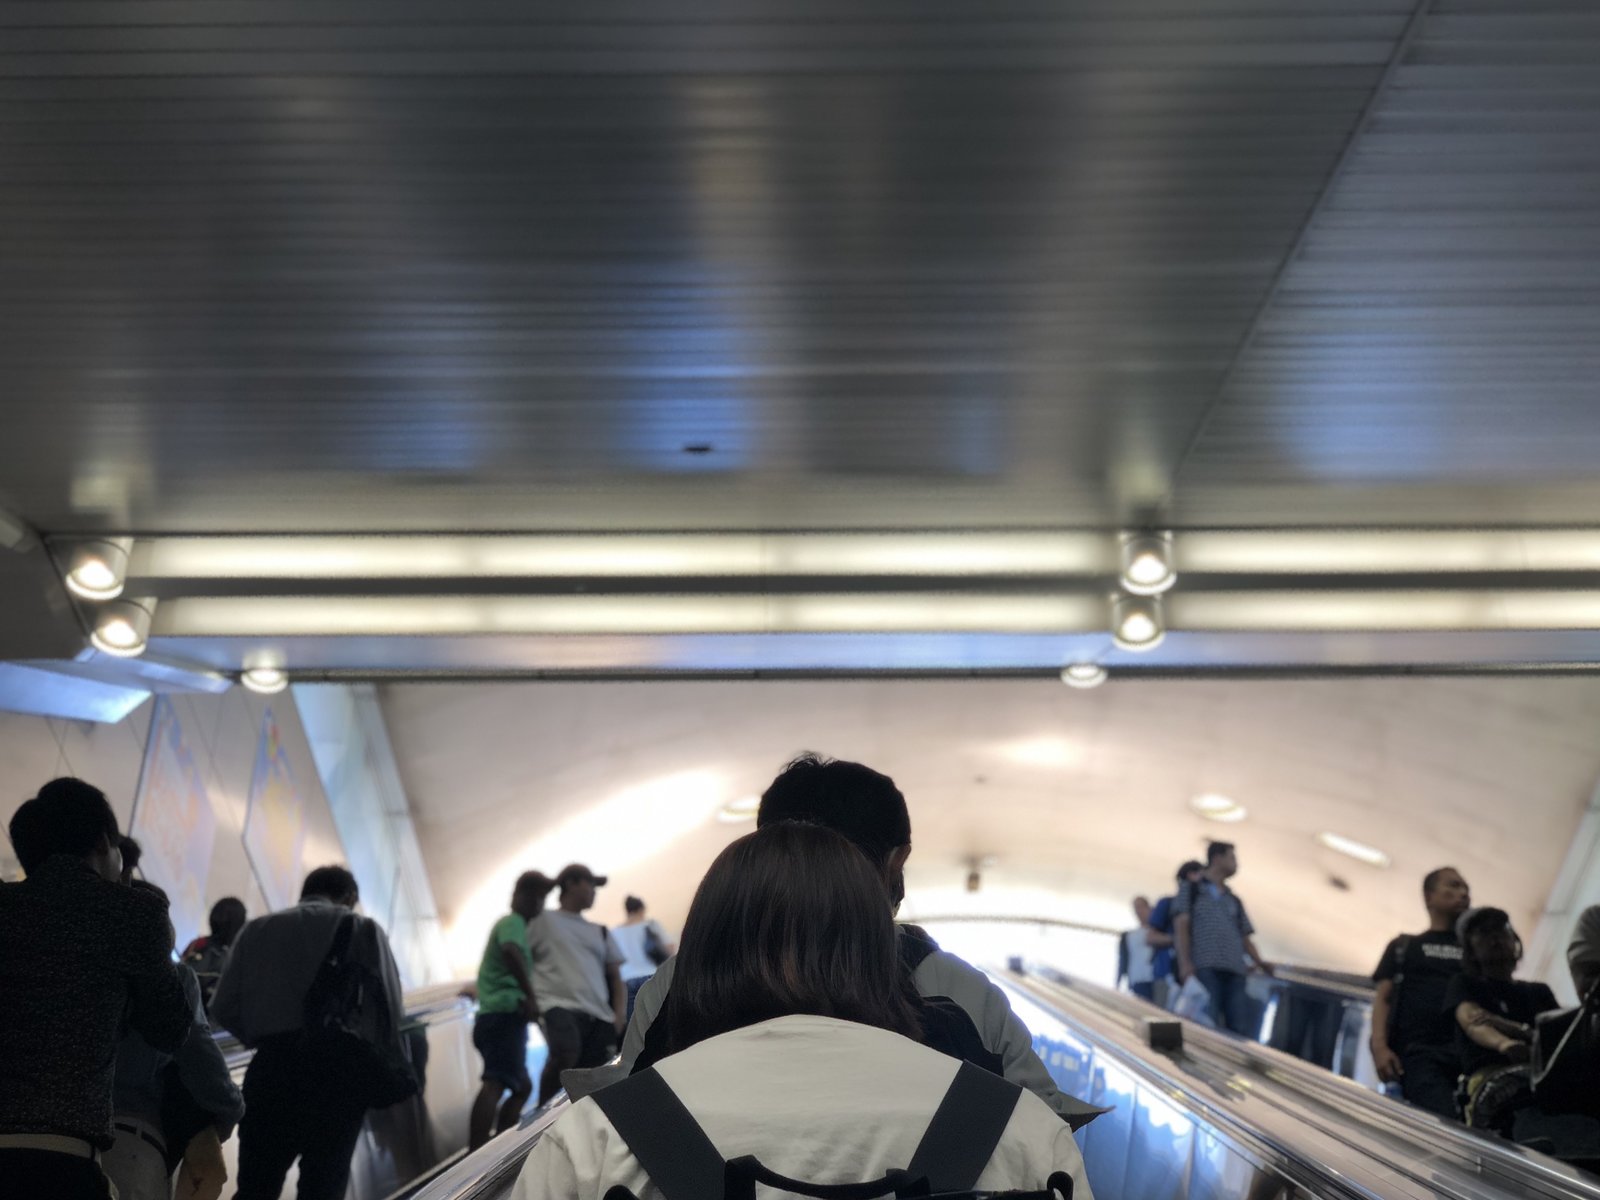 東京テレポート駅